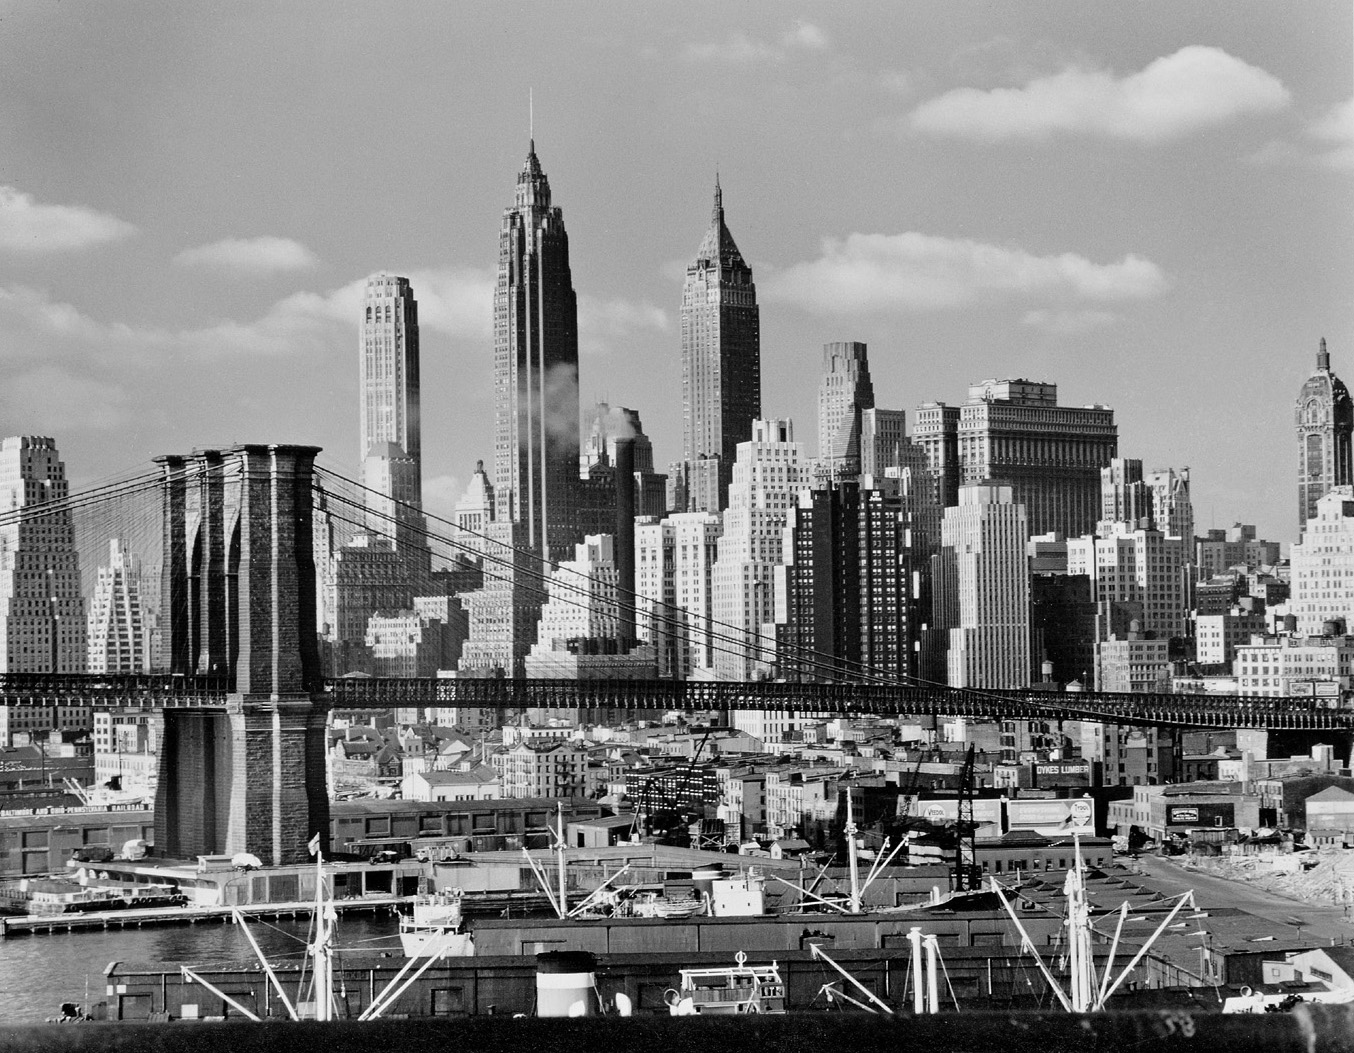 Ausstellungsfoto von Andreas Feininger, das New York zeigt